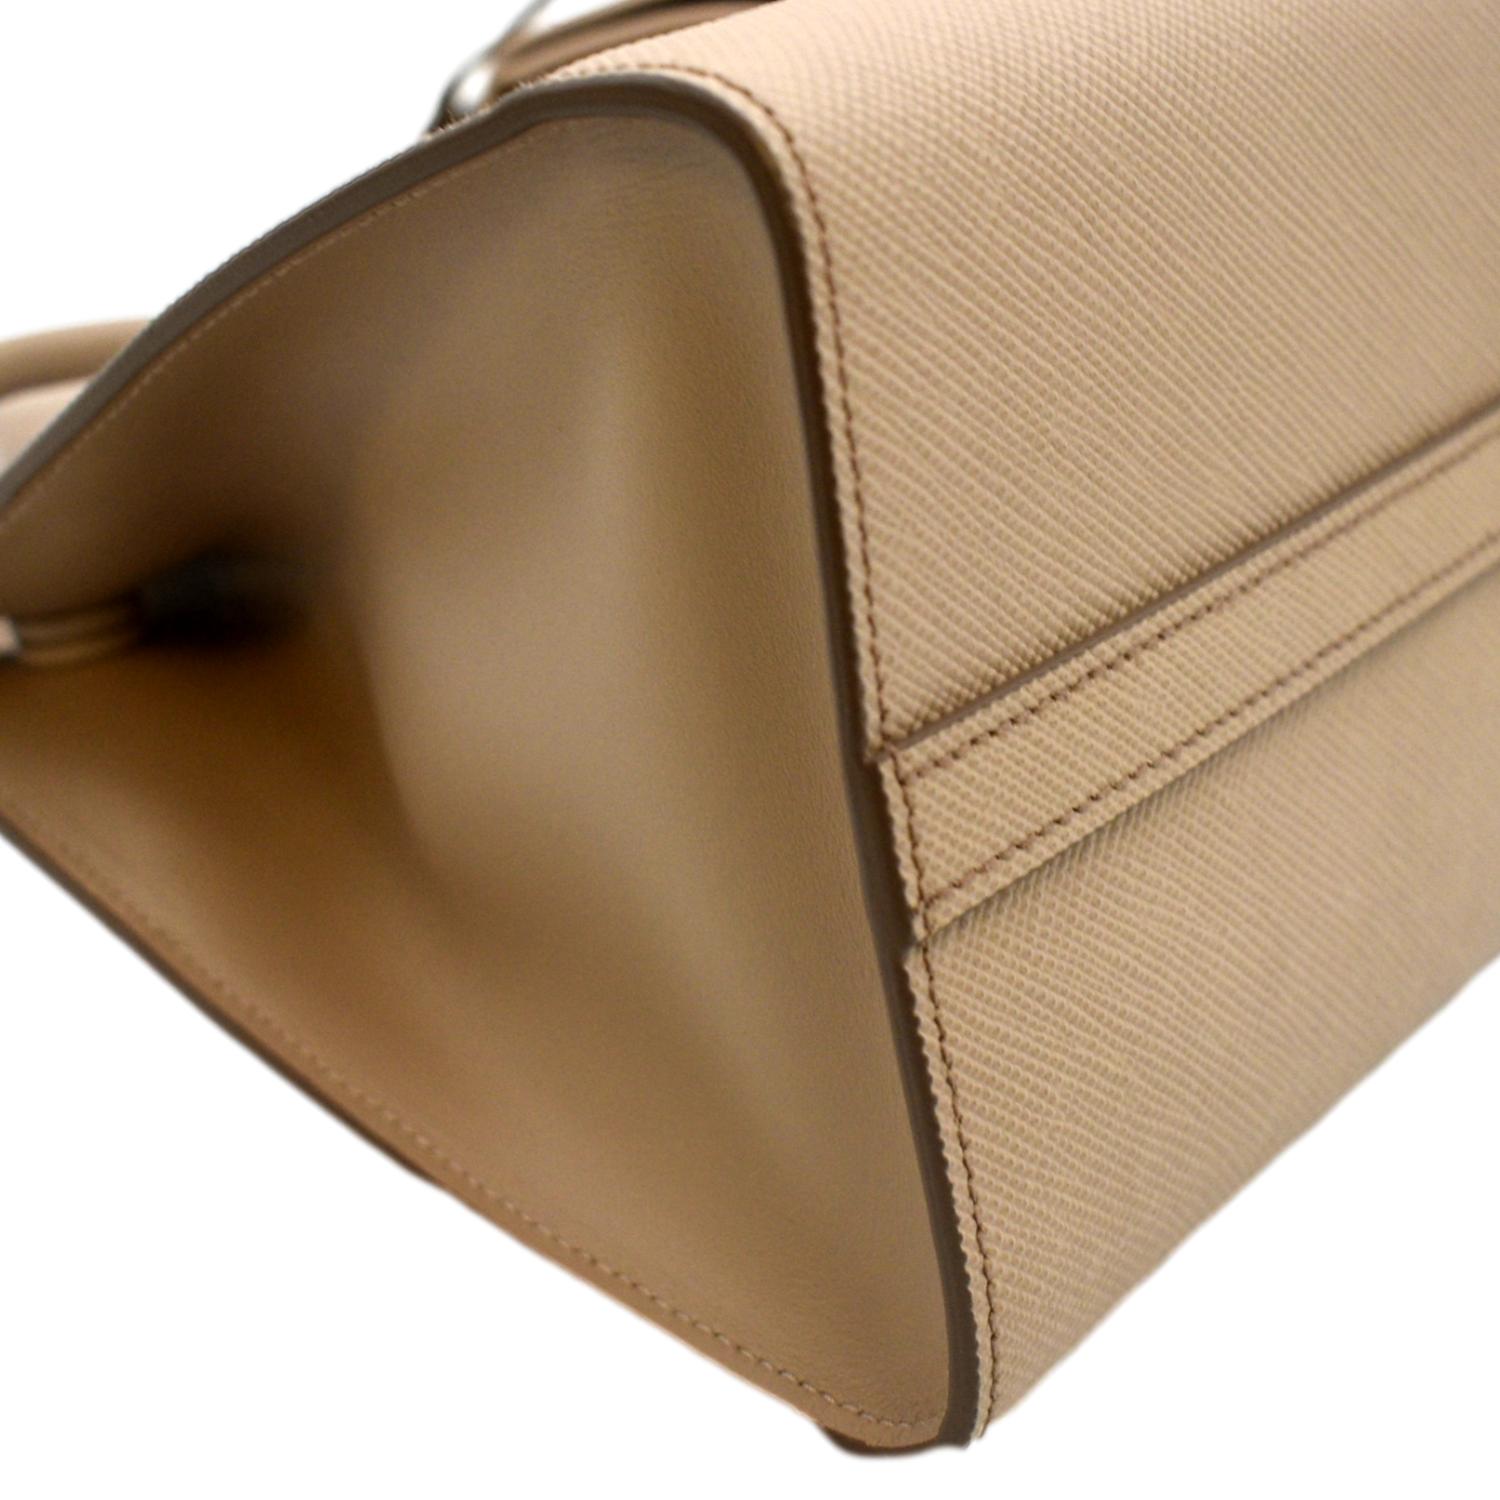 AliciaShop NEW Prada Small Saffiano Leather Prada Monochrome Bag